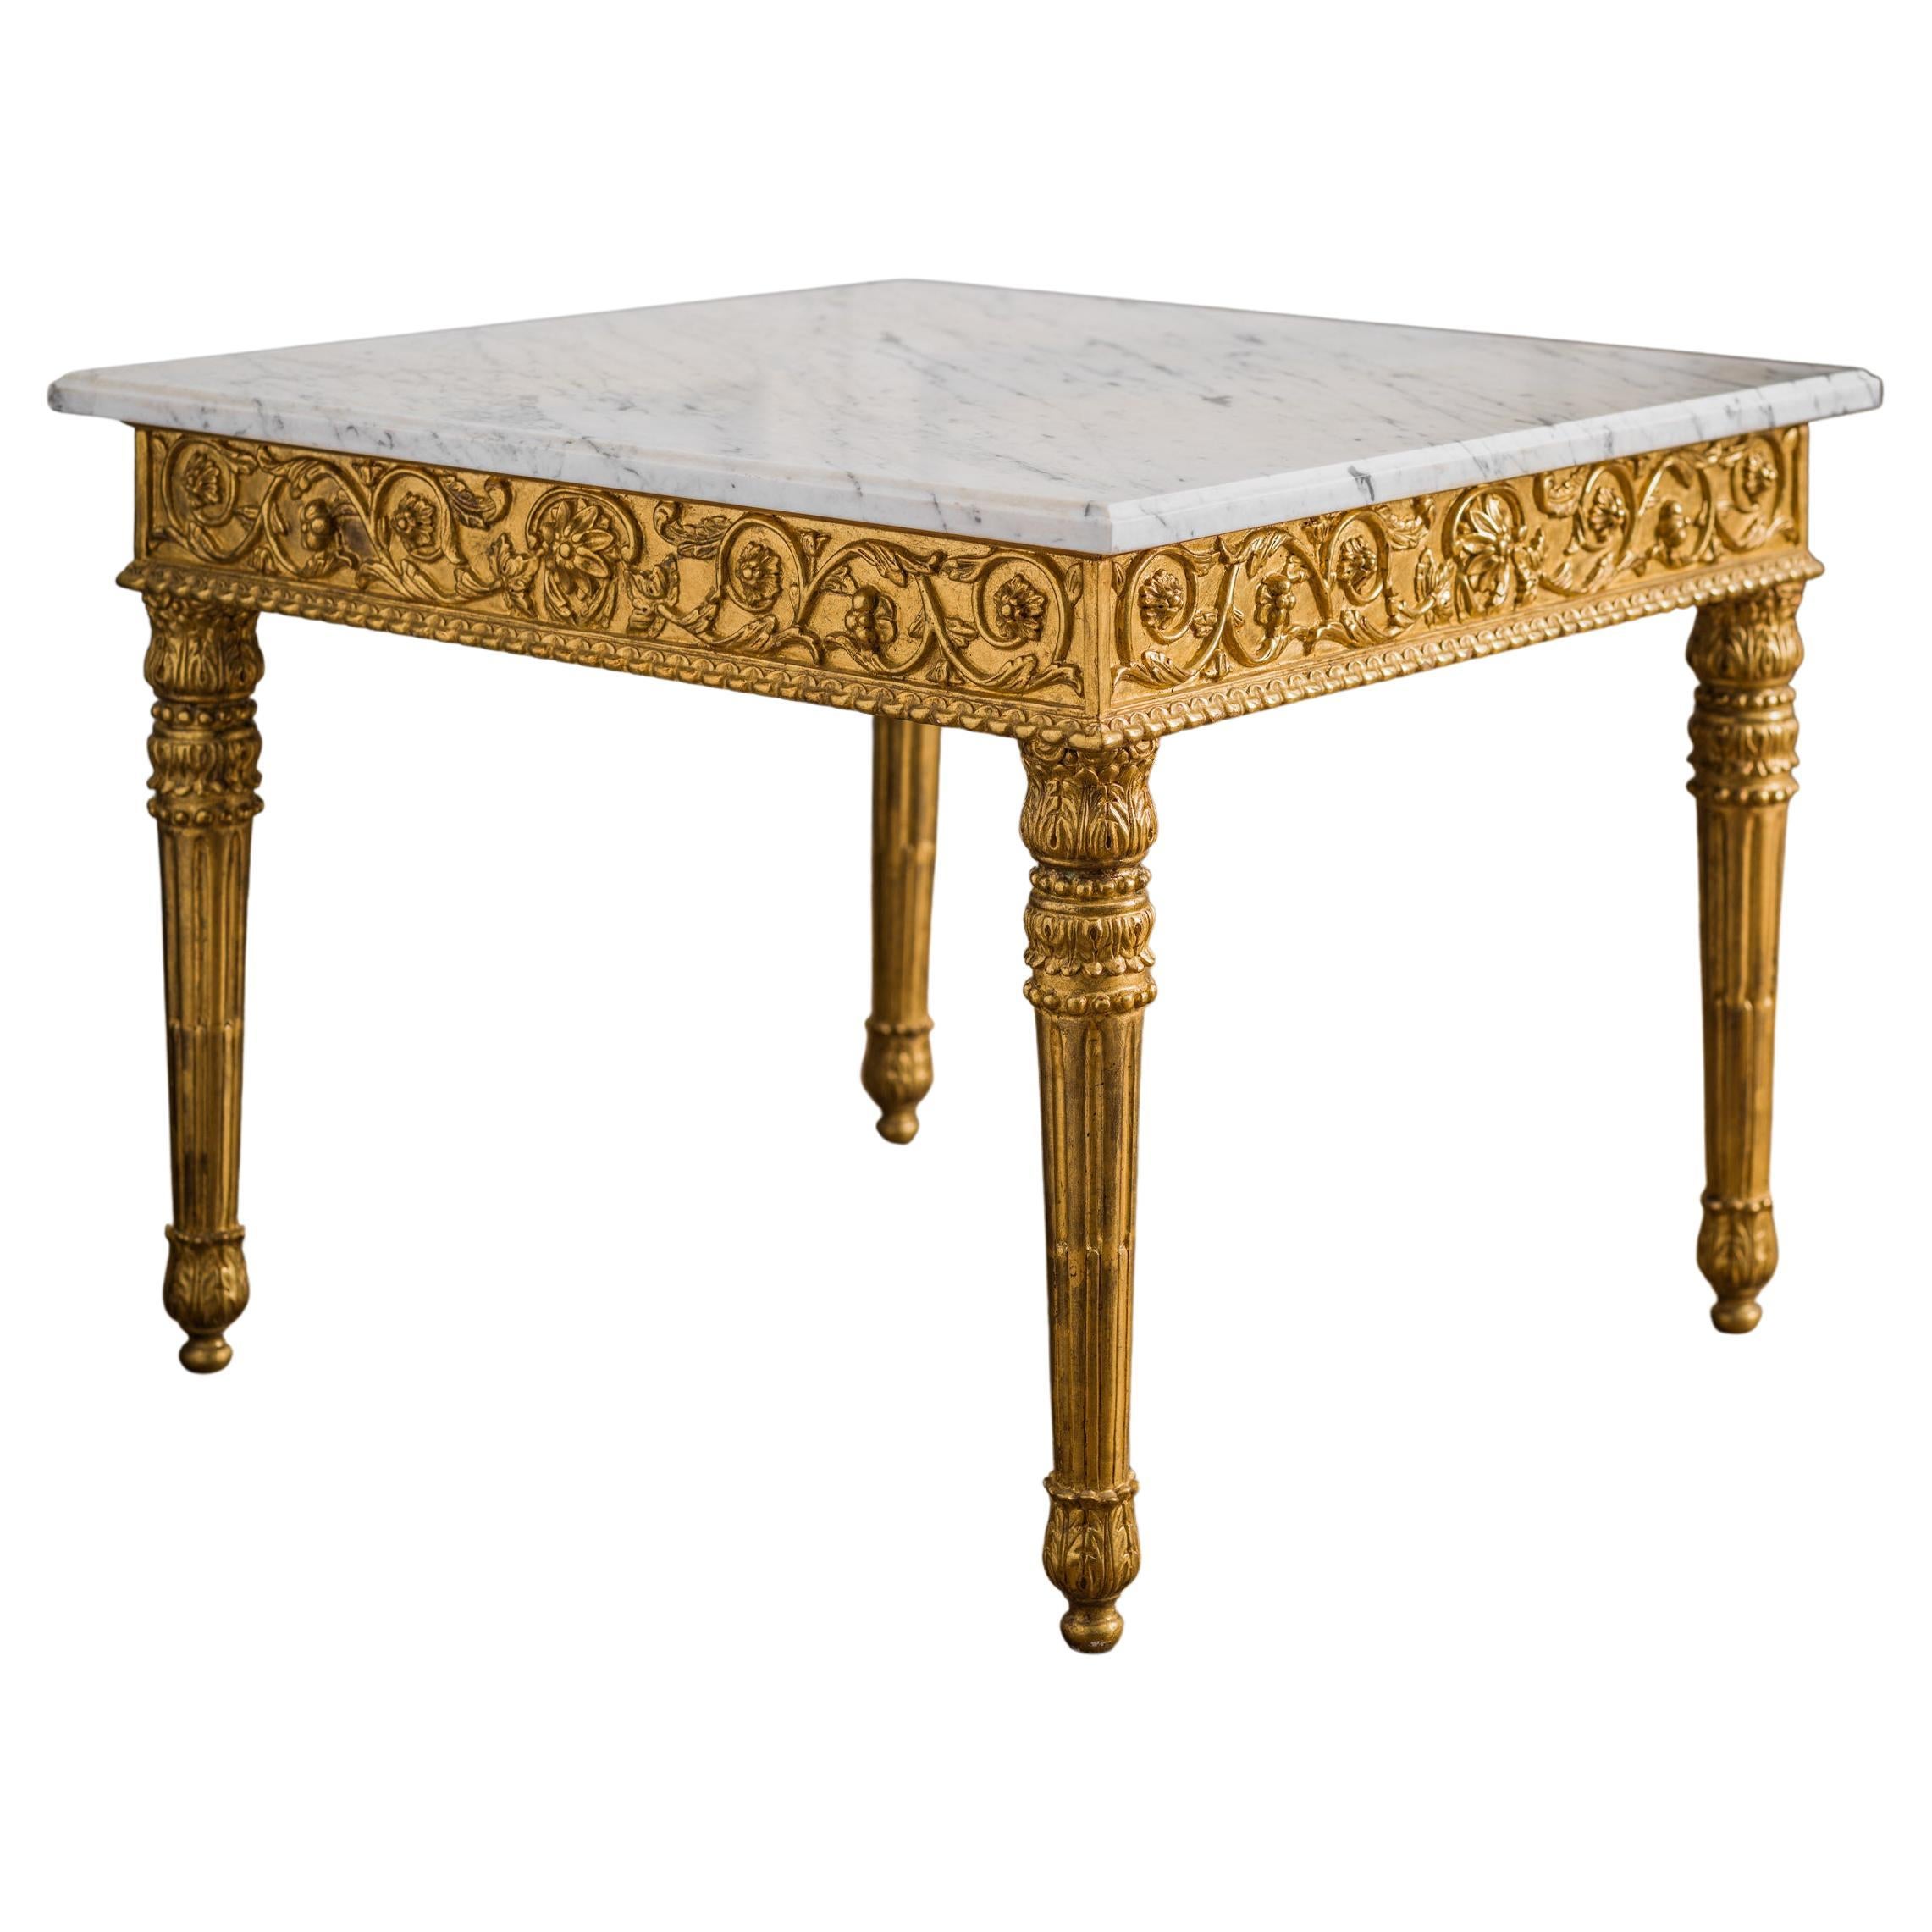 Mesa de centro francesa tallada a mano en madera dorada estilo Luis XVI con tapa de mármol